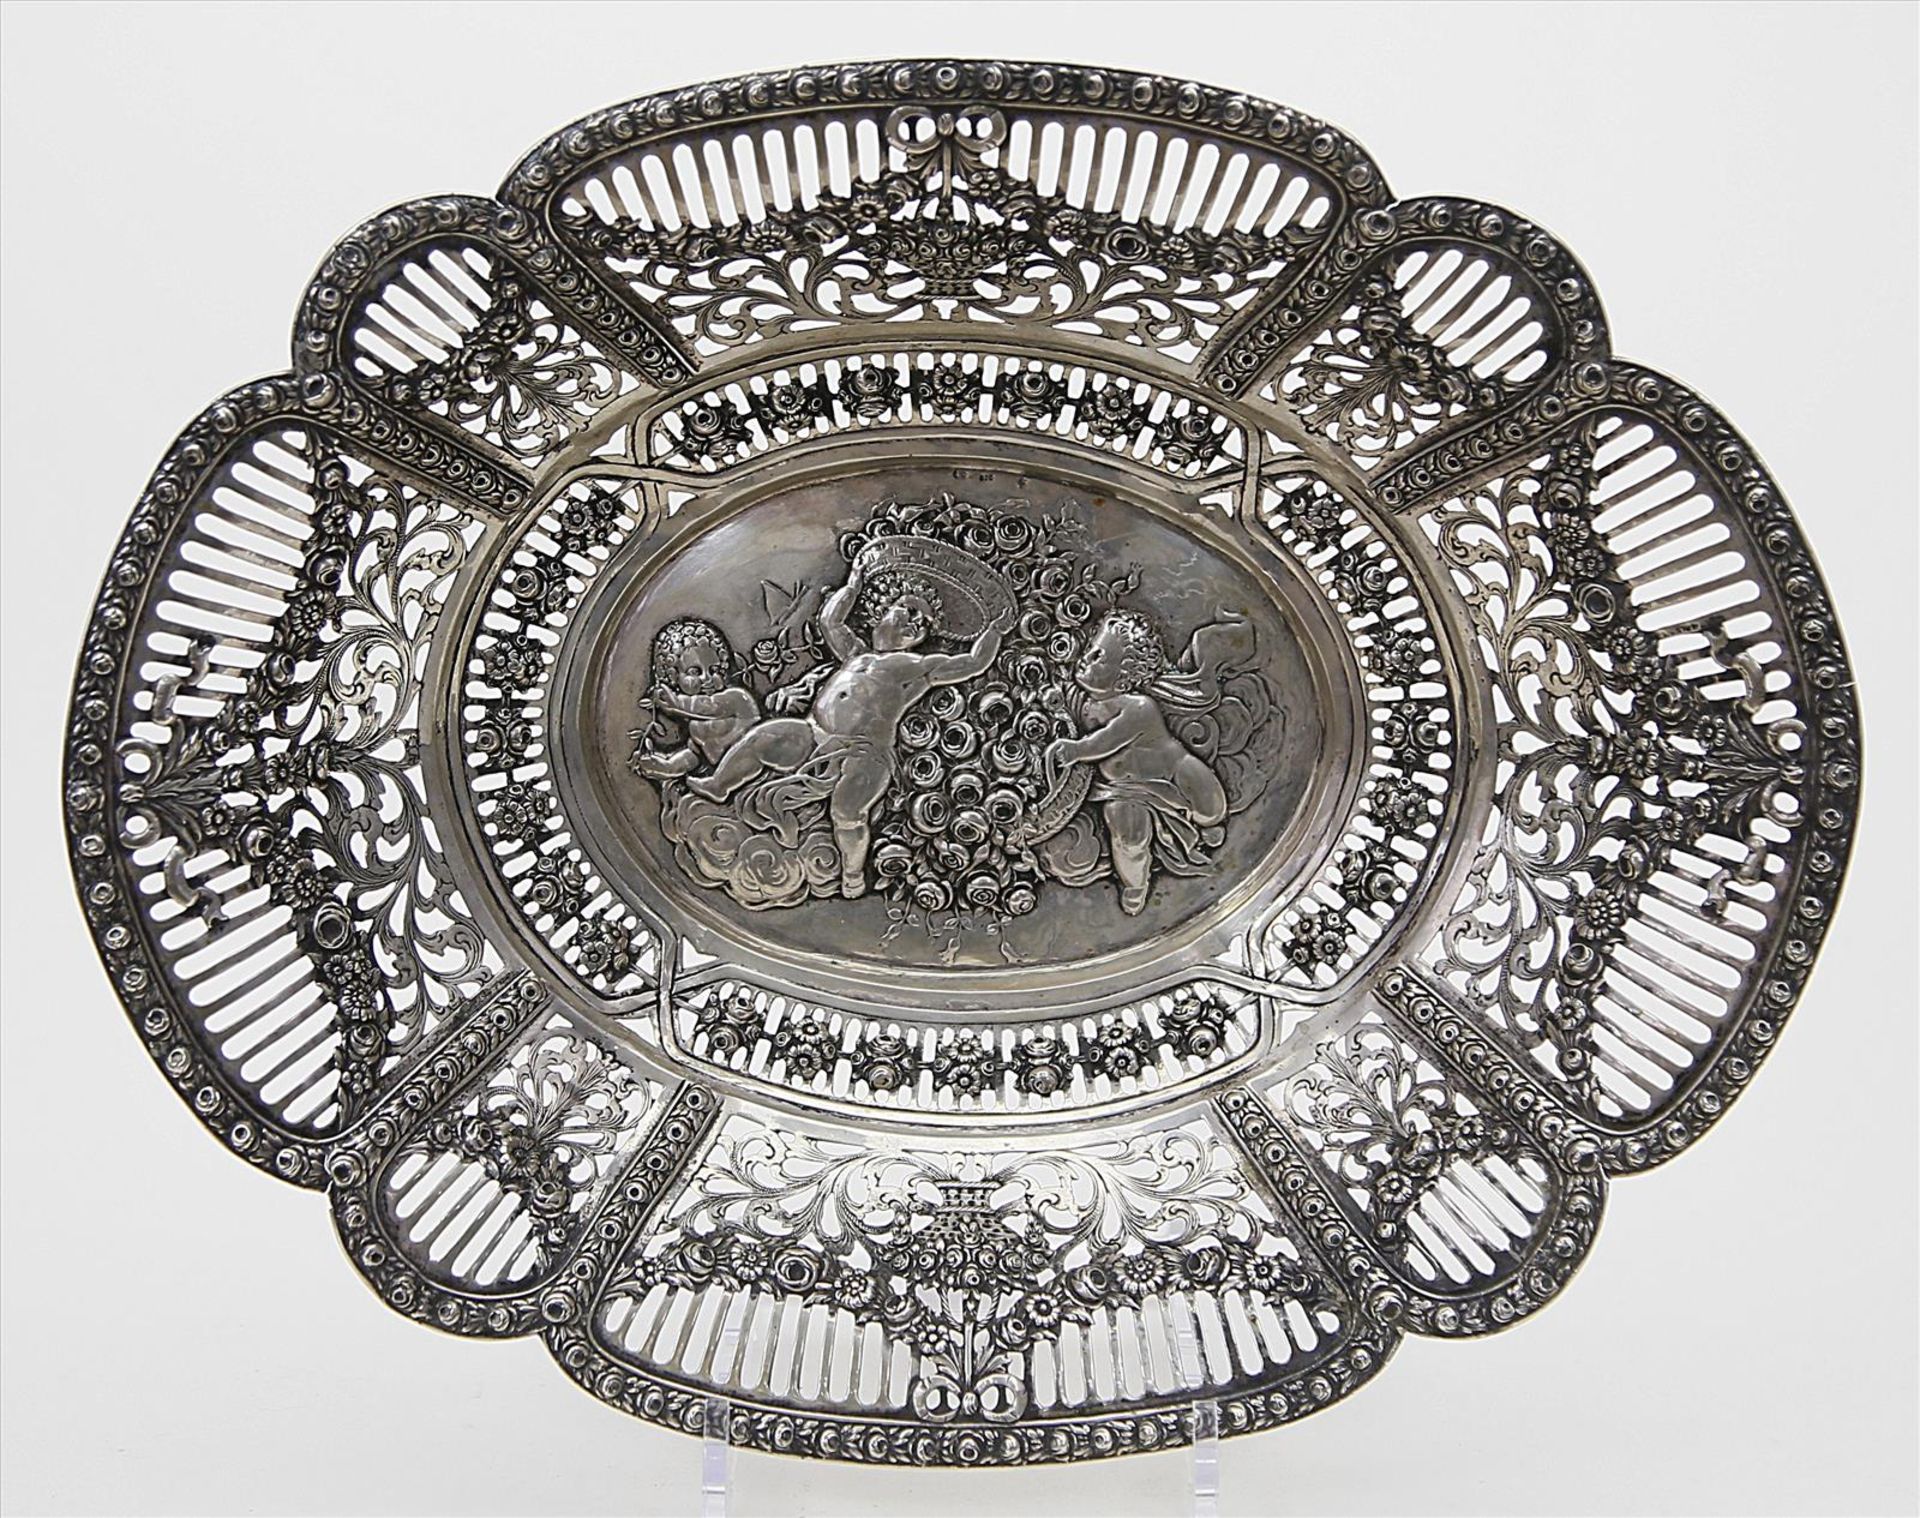 Ovale Schale.800/000 Silber, 507 g. Wandung mit durchbrochen gearbeitetem Gitterwerk und Rocaillen